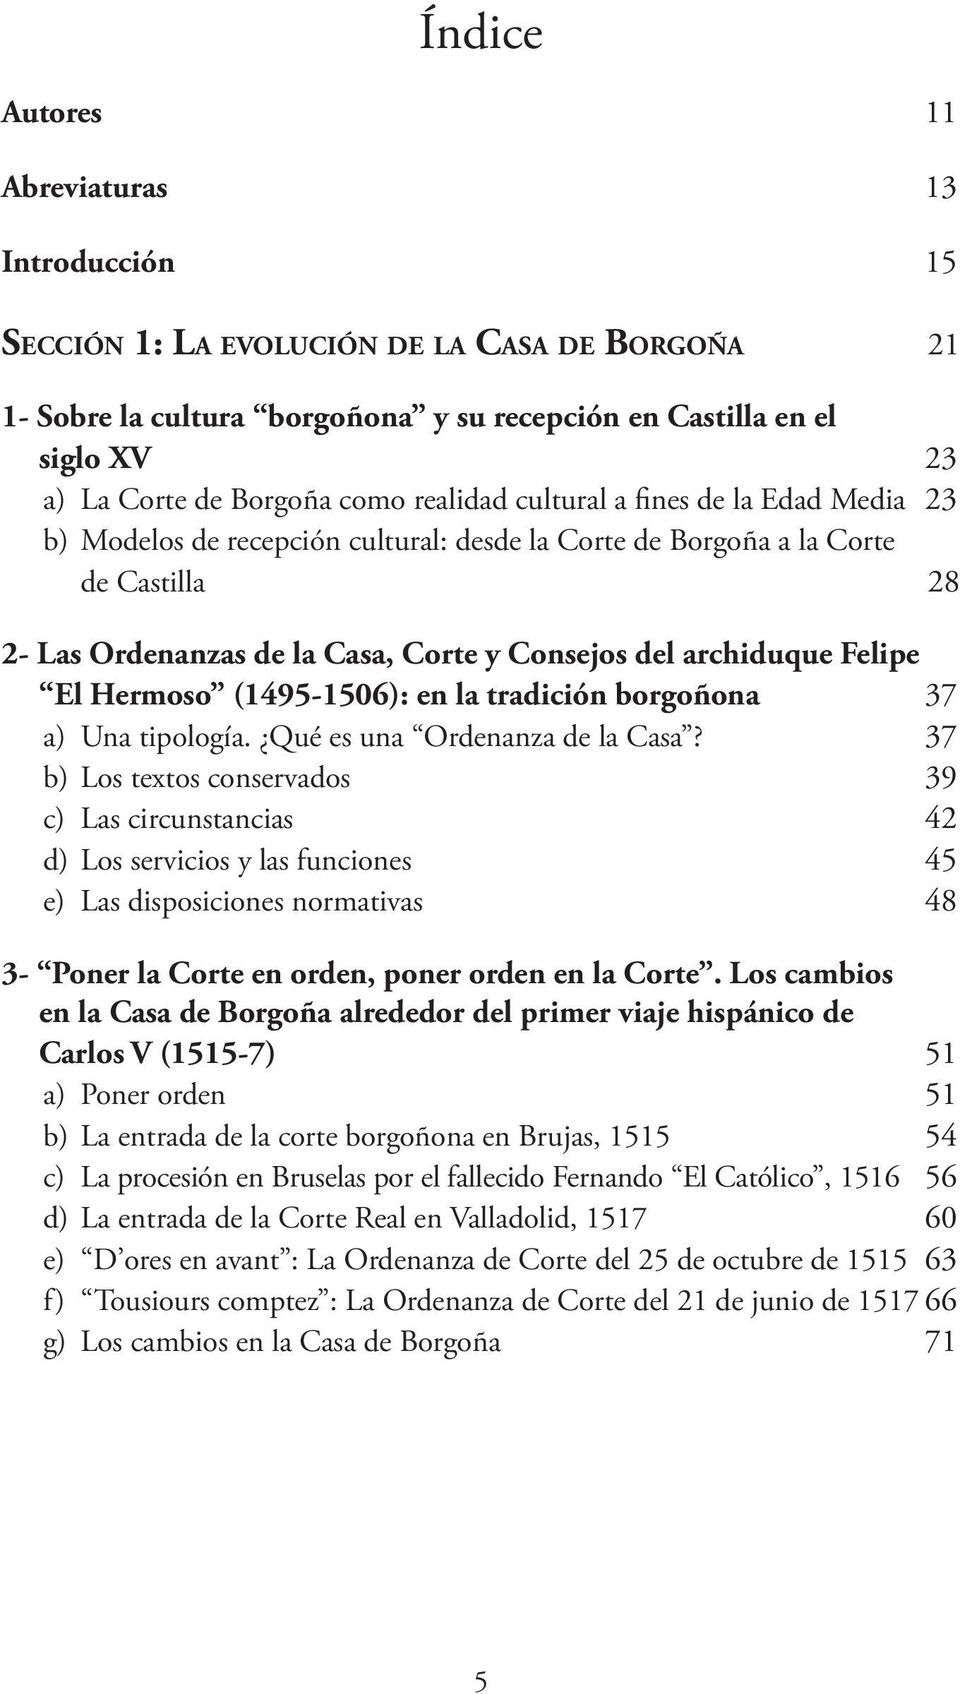 Felipe El Hermoso (1495-1506): en la tradición borgoñona 37 a) Una tipología. Qué es una Ordenanza de la Casa?